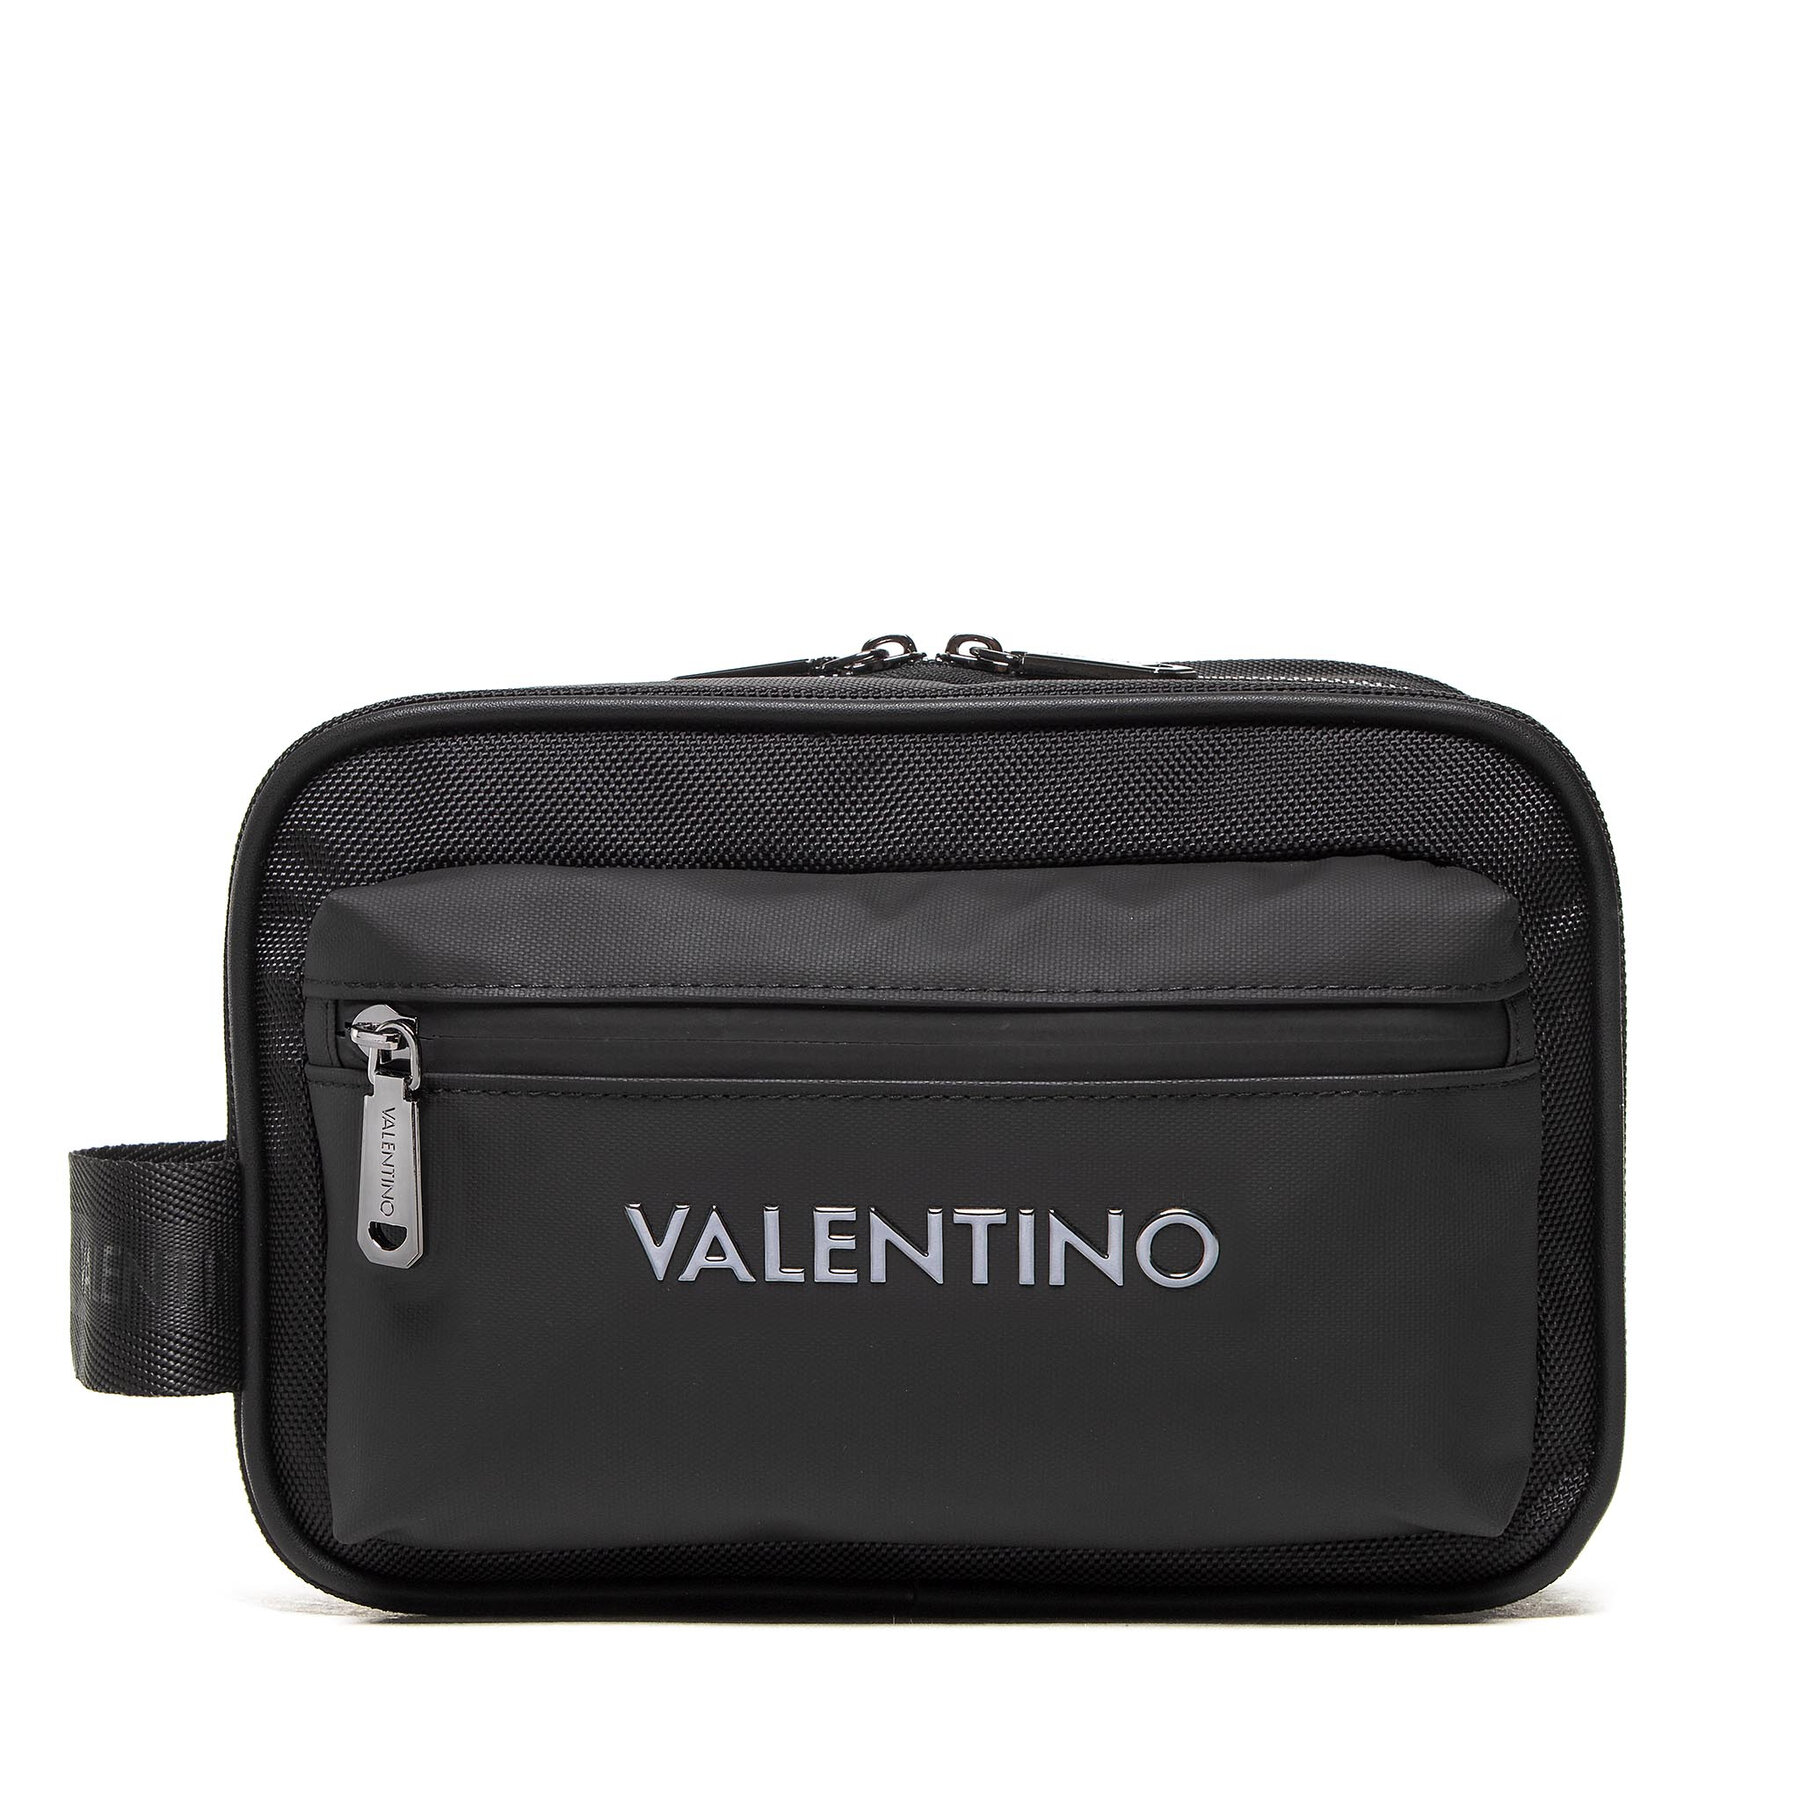 Geantă pentru cosmetice Valentino Plin VBE6H0655 Nero cosmetice imagine super redus 2022